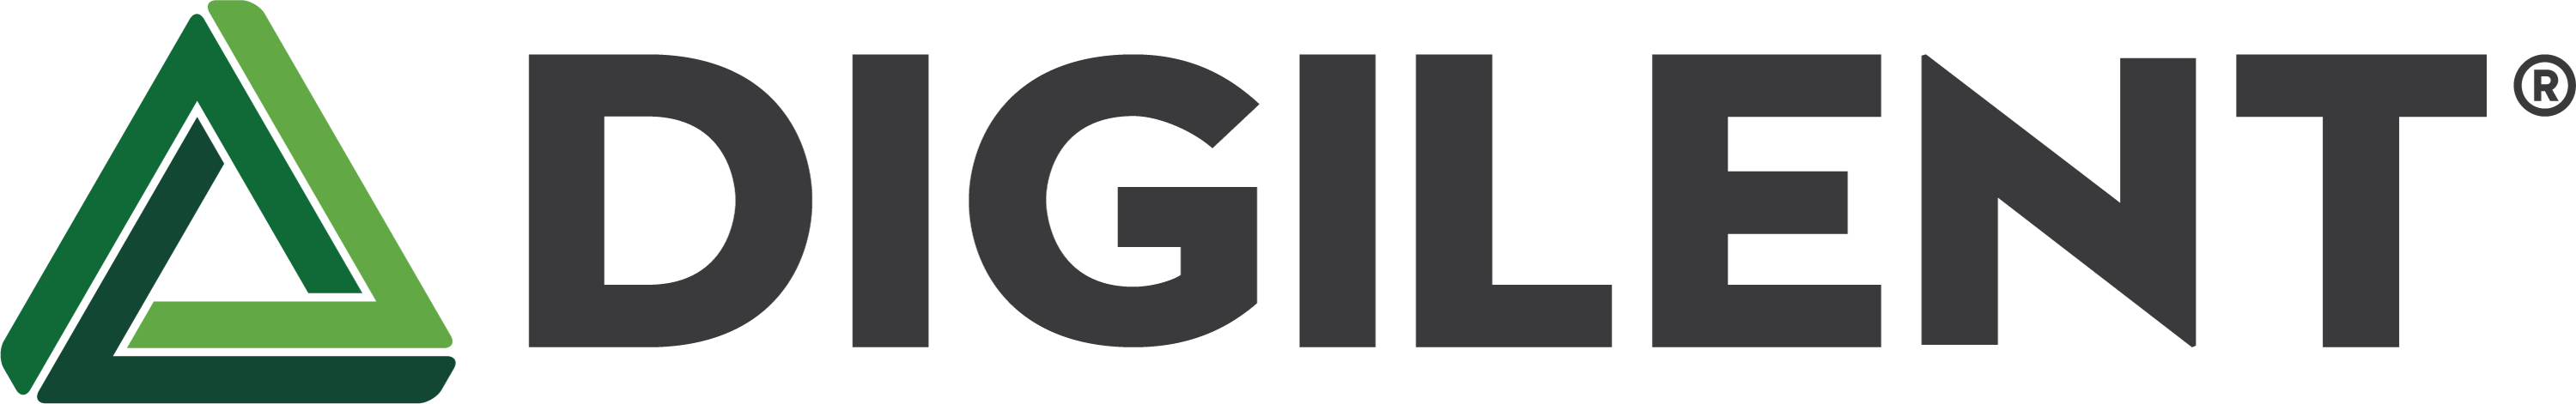 digilent-logo2015-color-3000.png